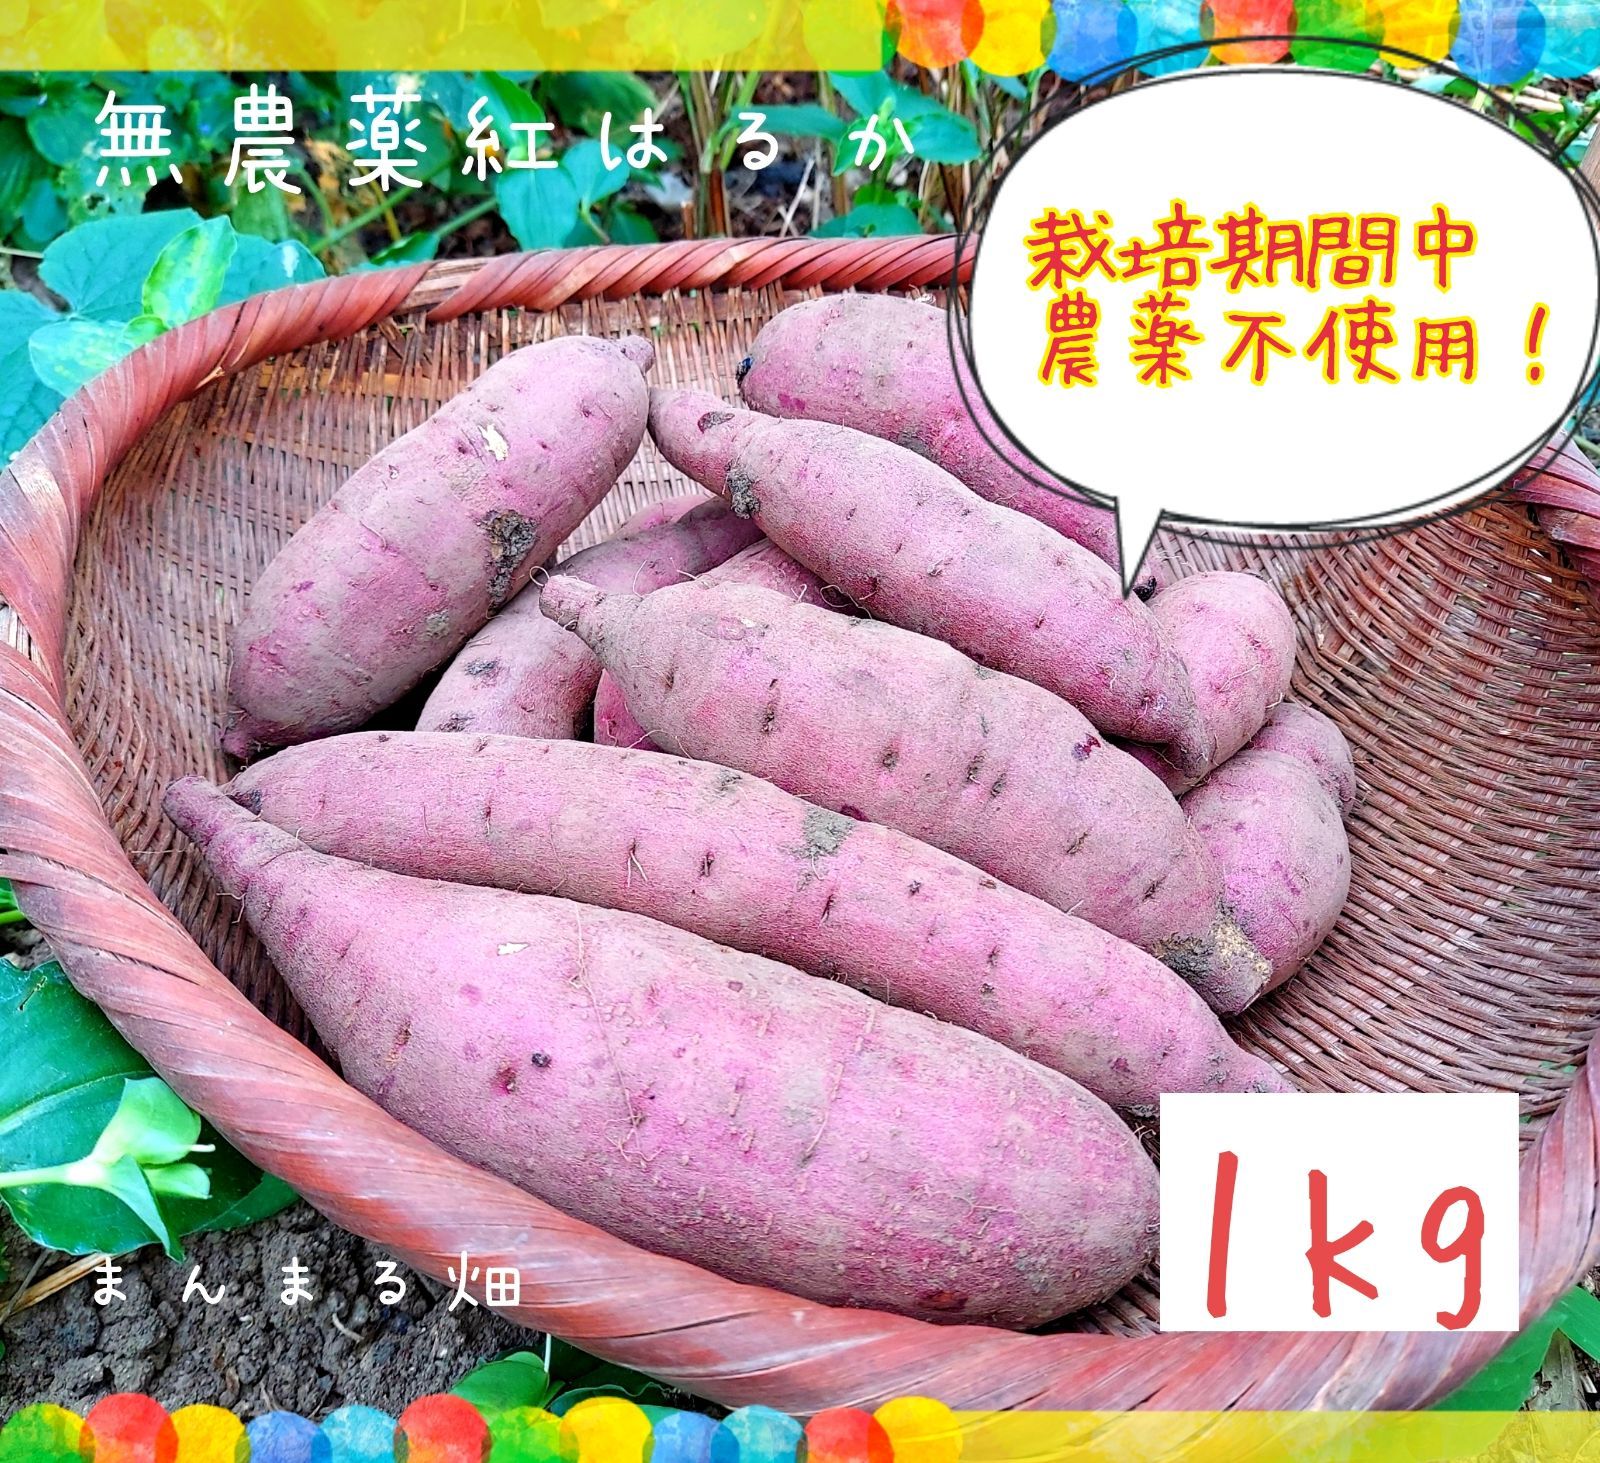 3月3日収穫分 鹿児島県産たけのこ 4.9kg - 野菜